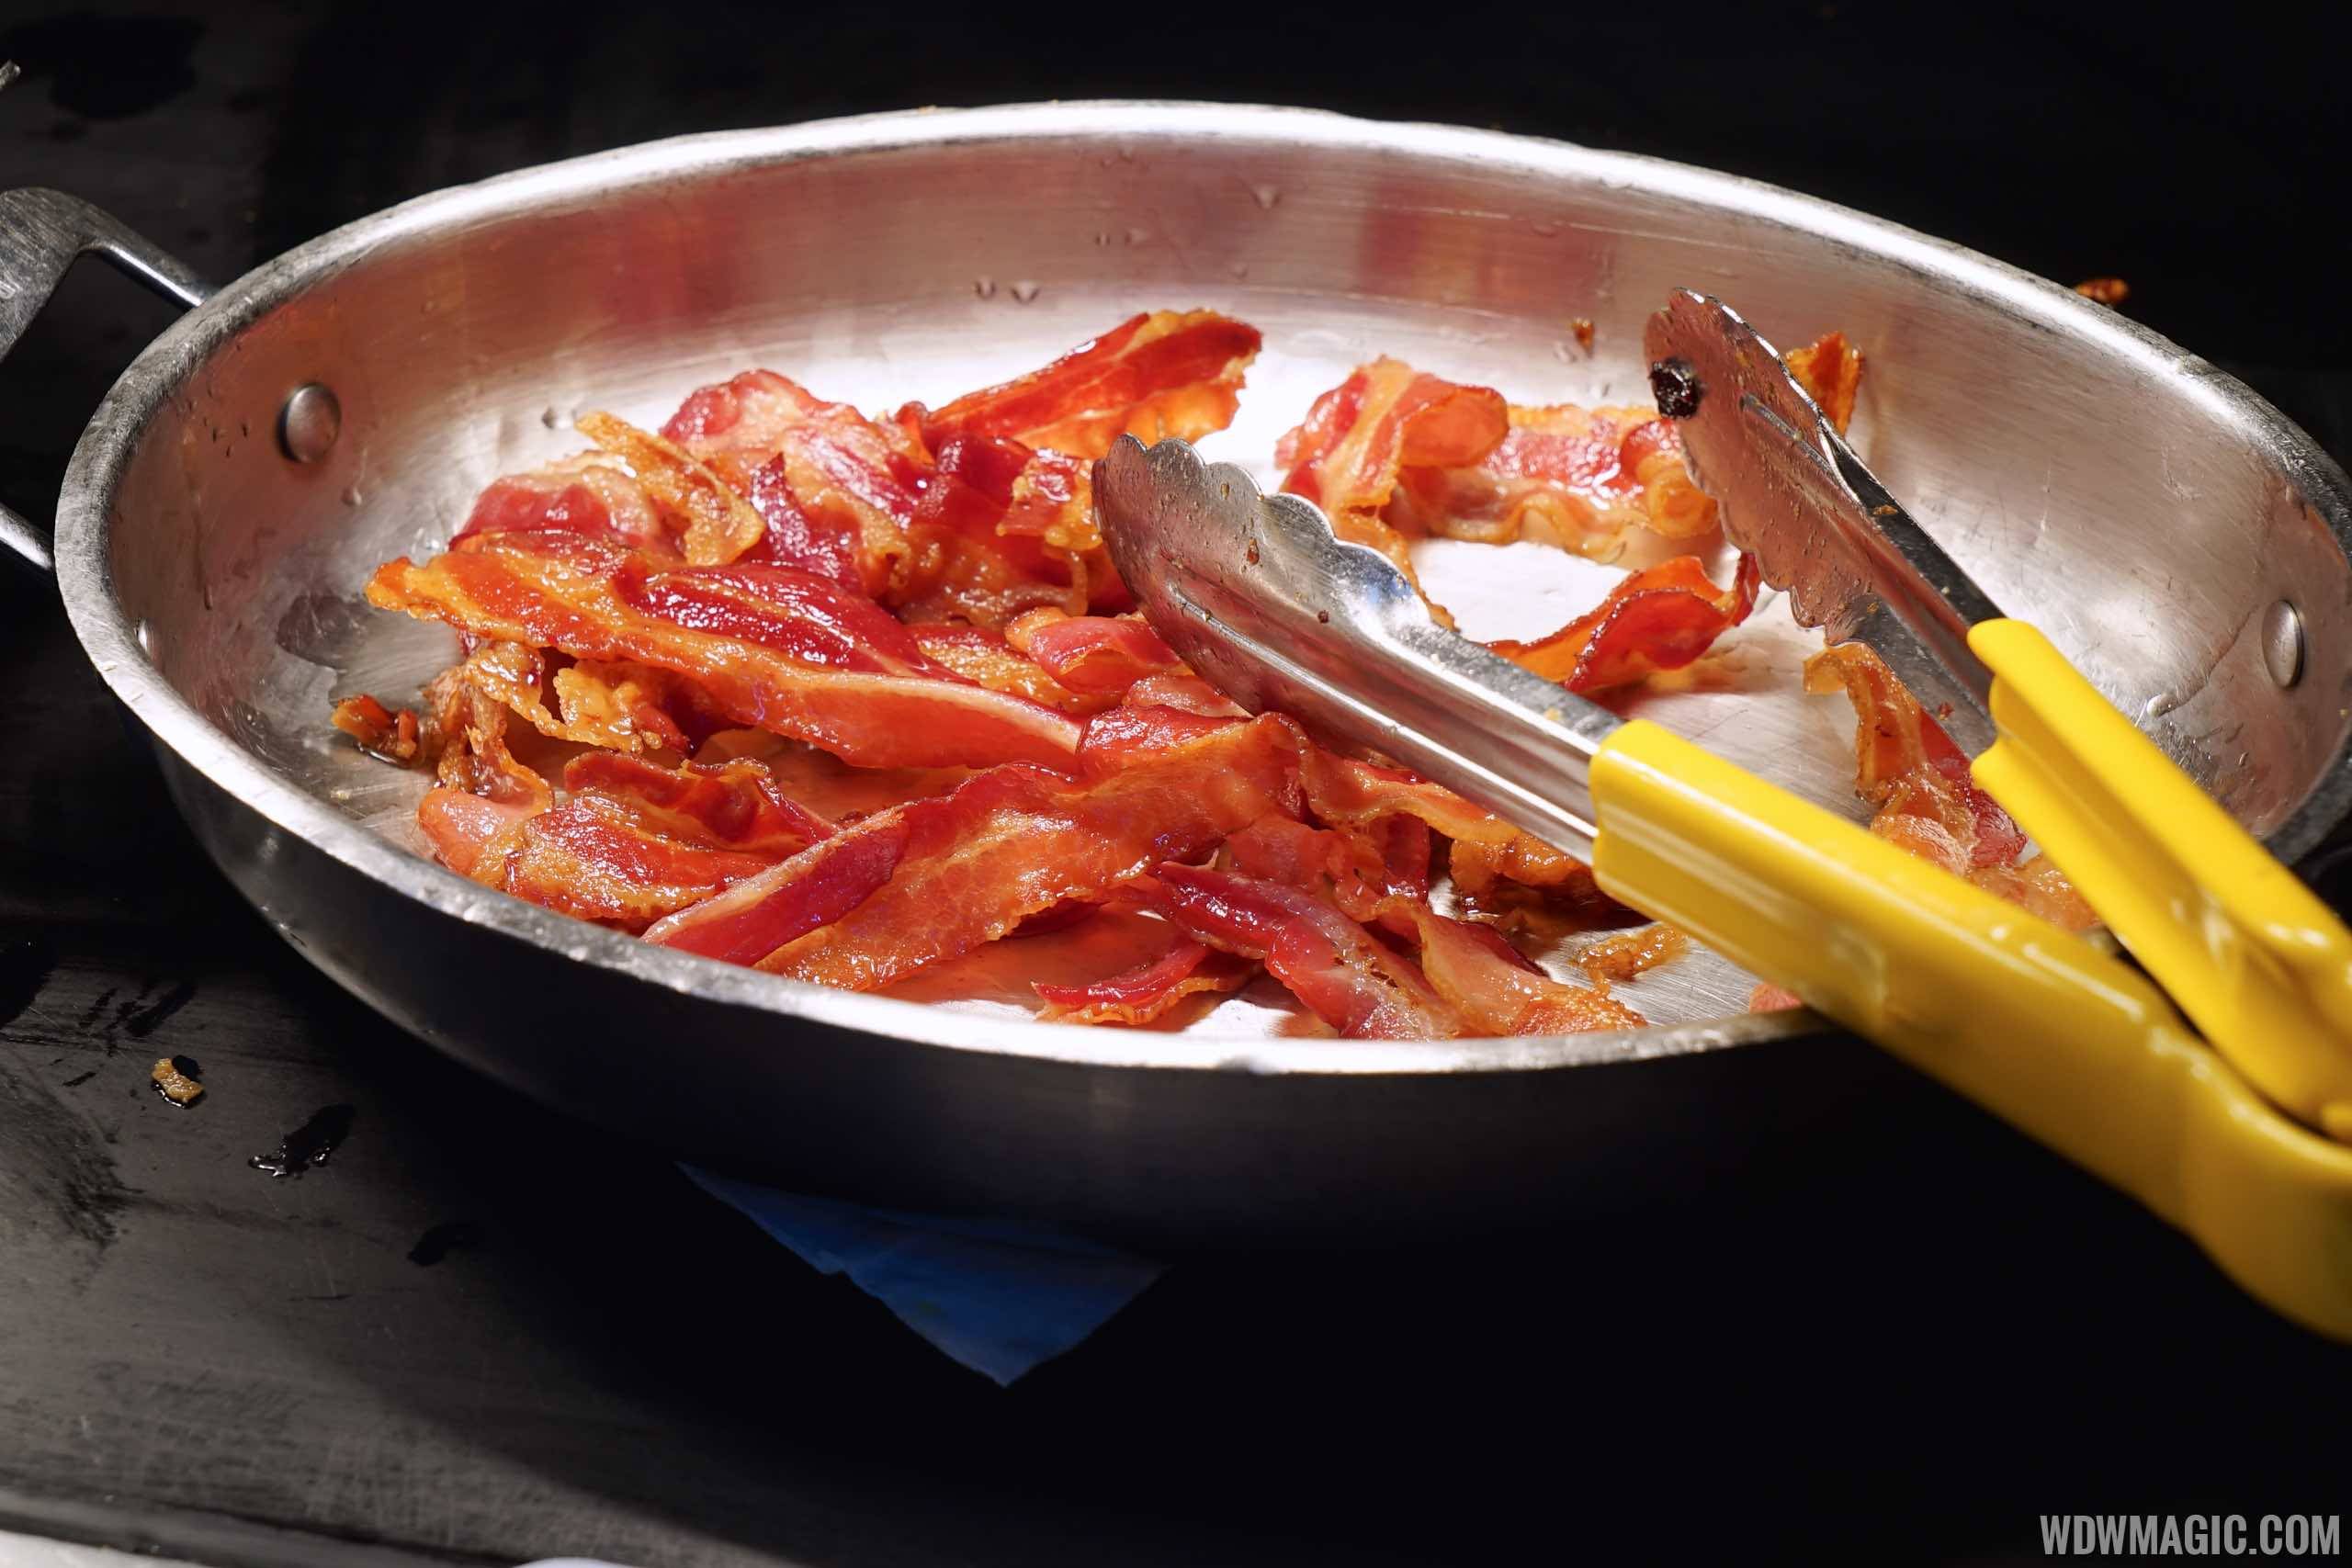 Boma Breakfast - Bacon